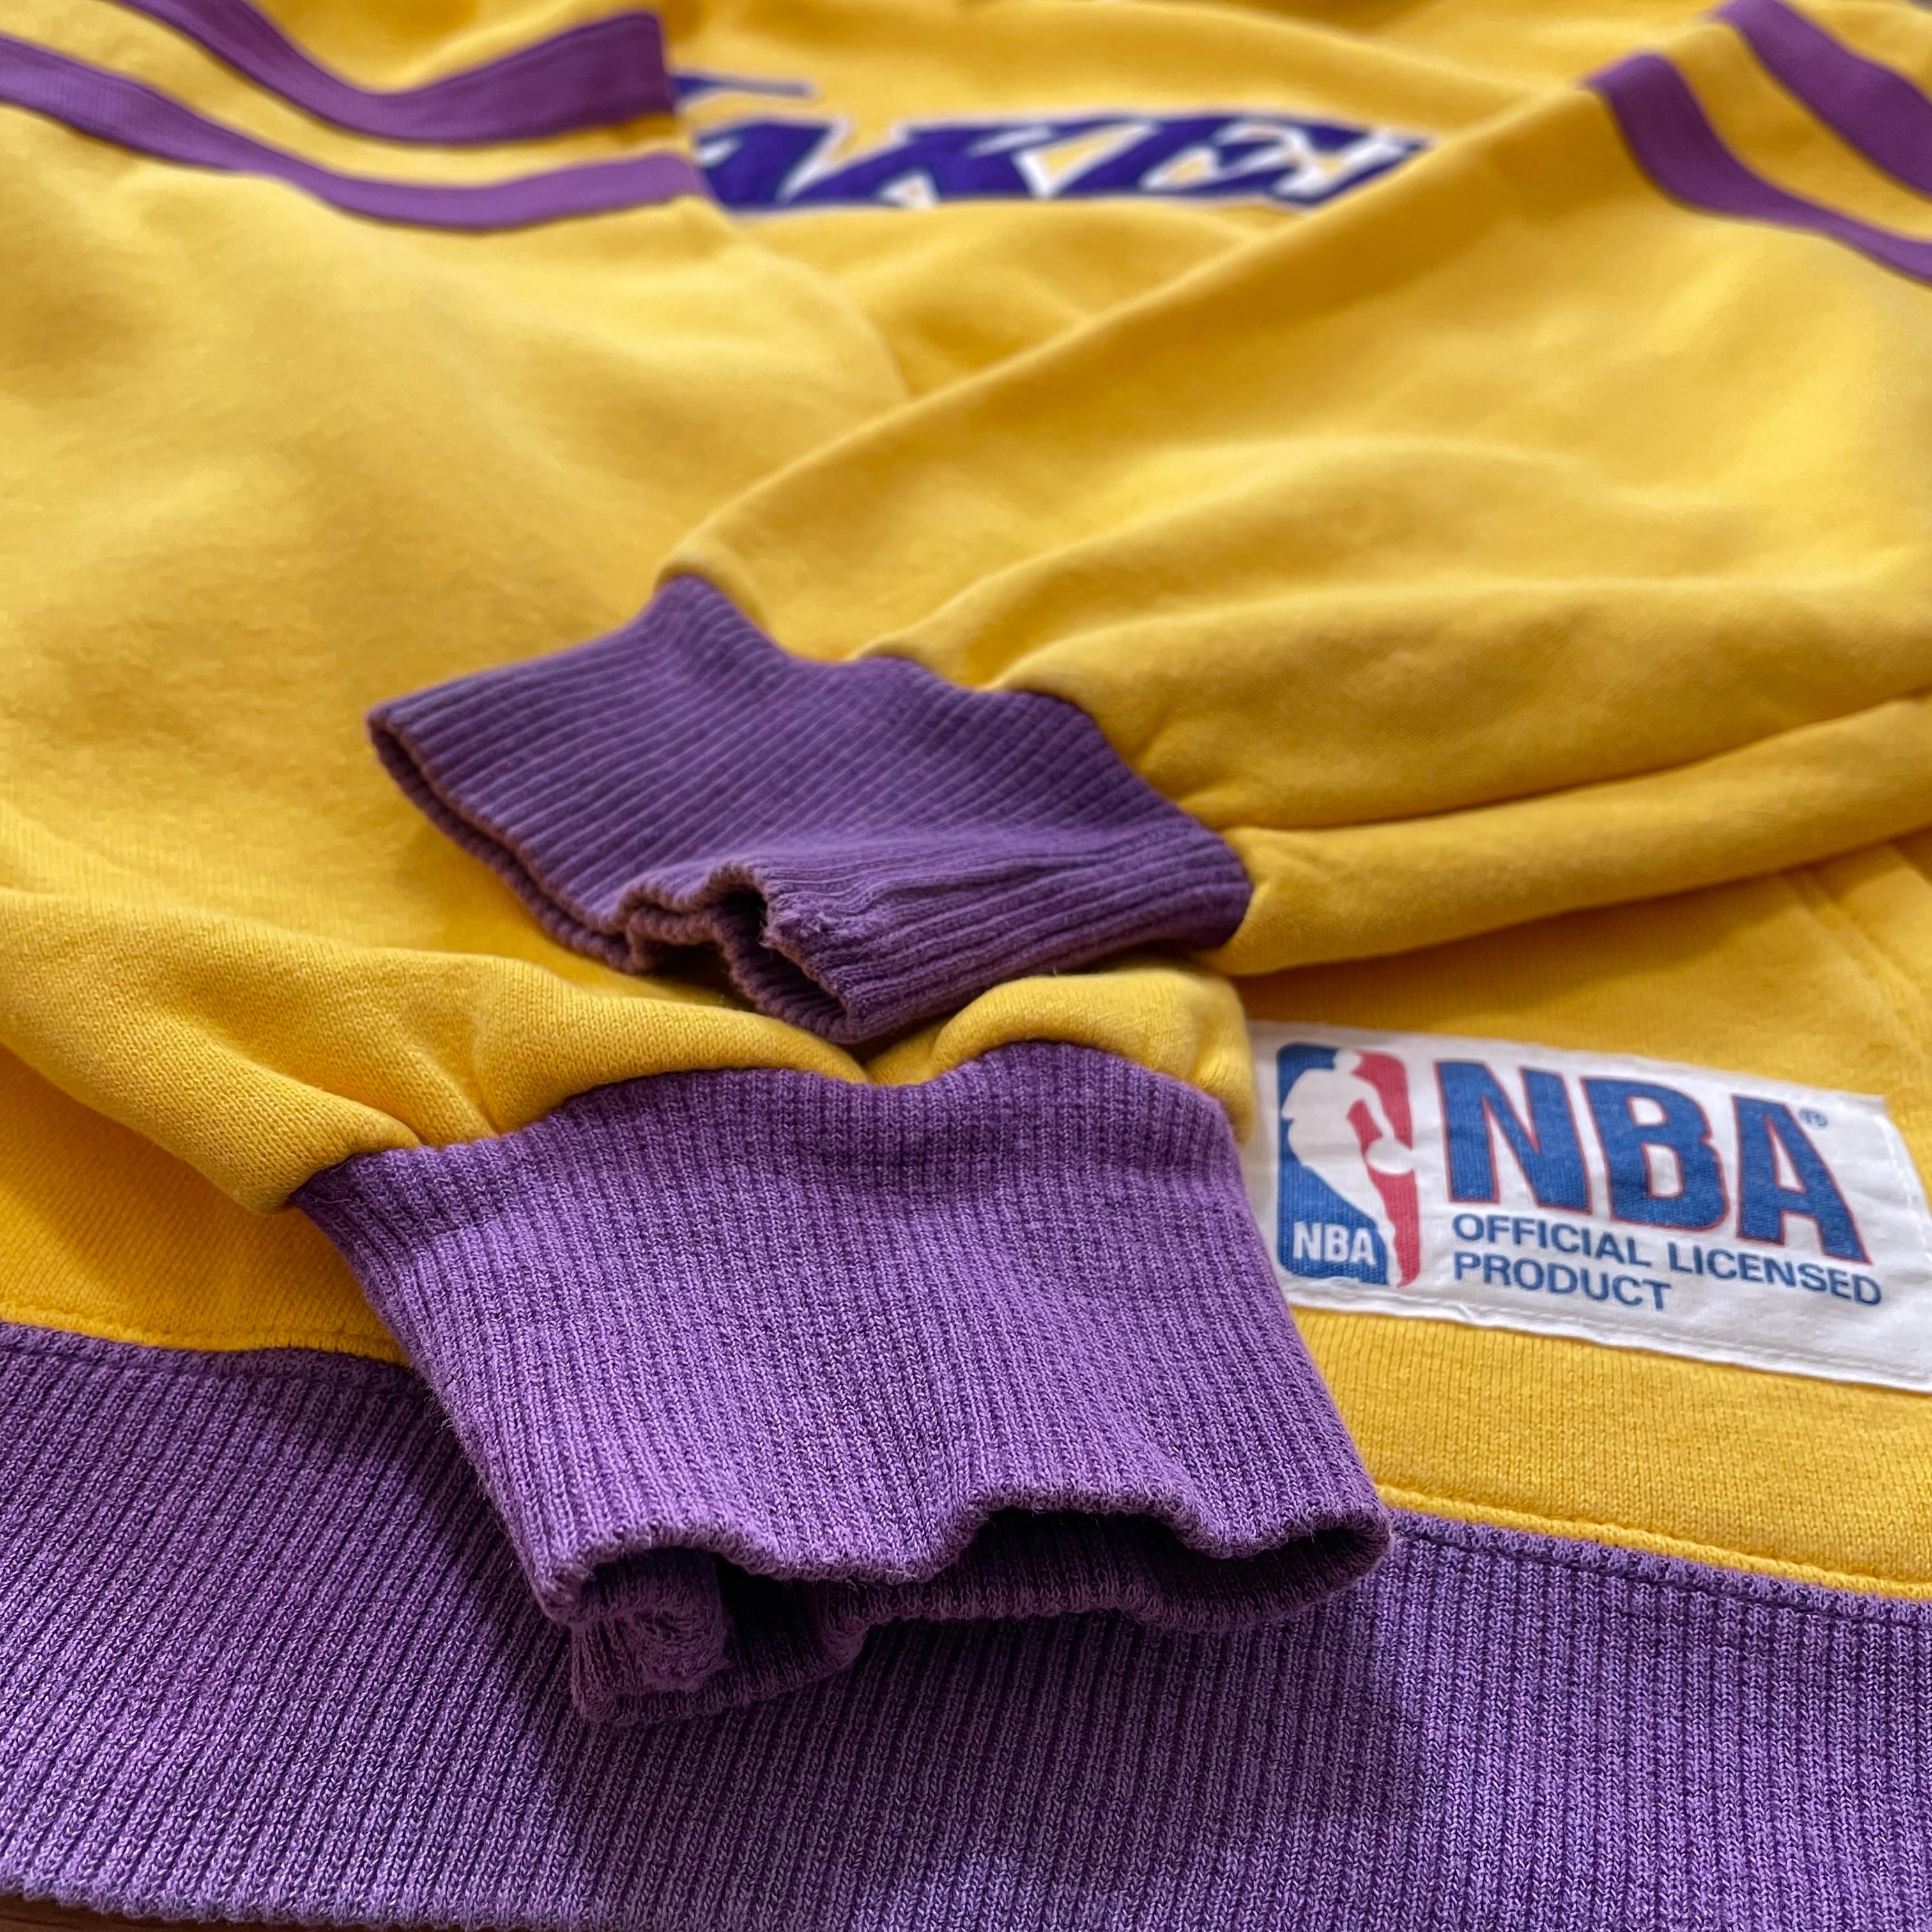 超レア NBA Lakers ジャージ ジャケット 90s